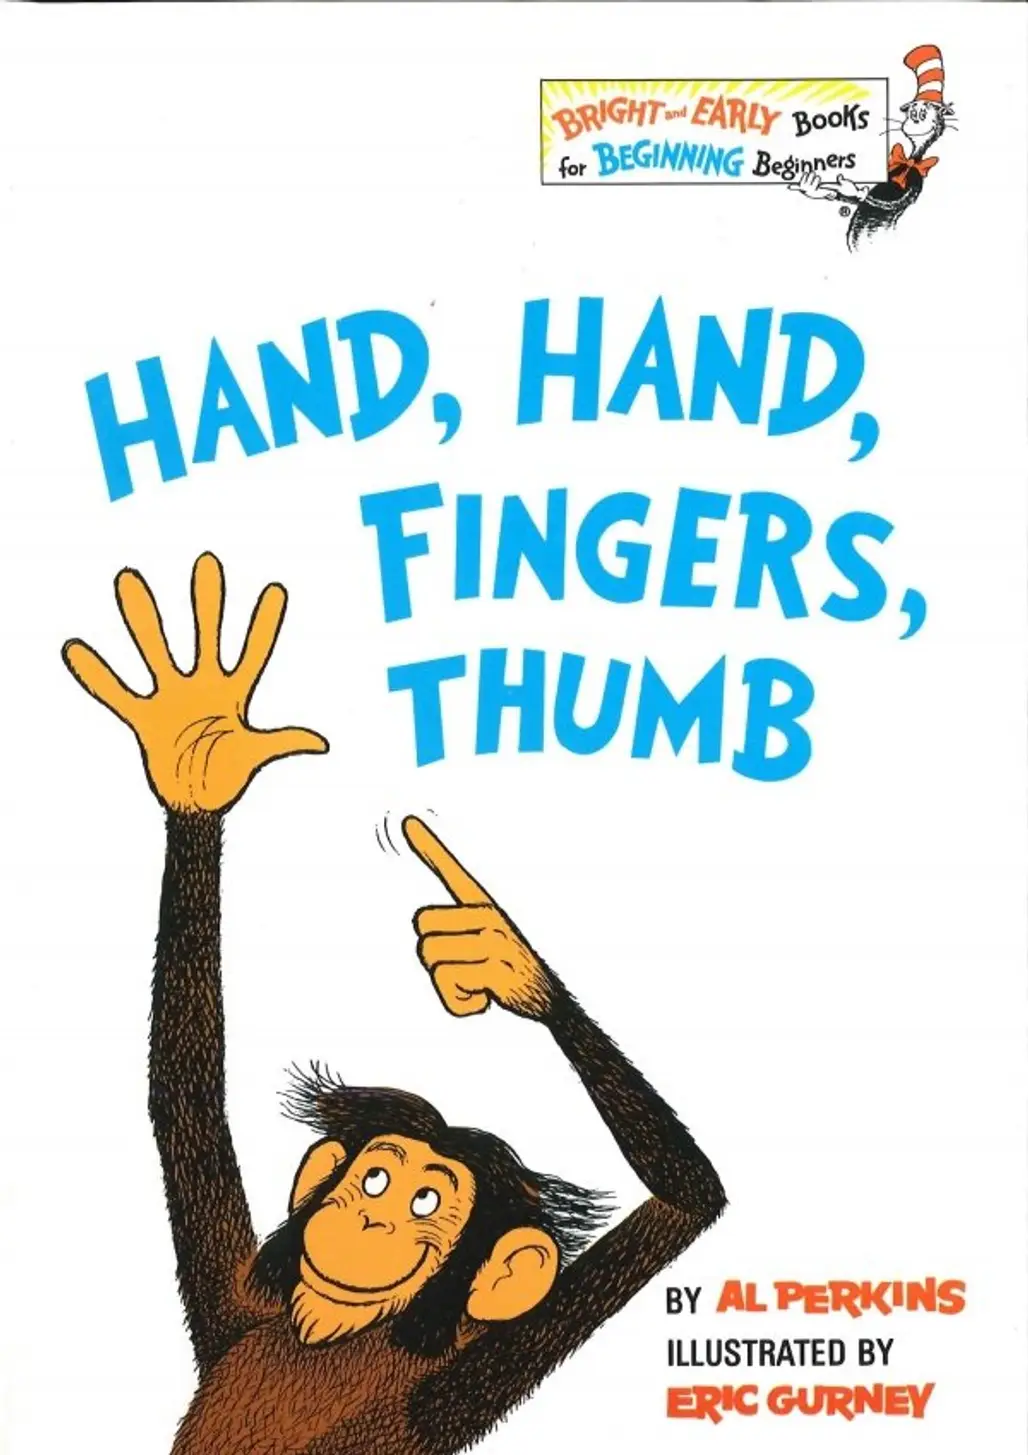 Hands, Hands, Fingers, Thumb by Al Perkins